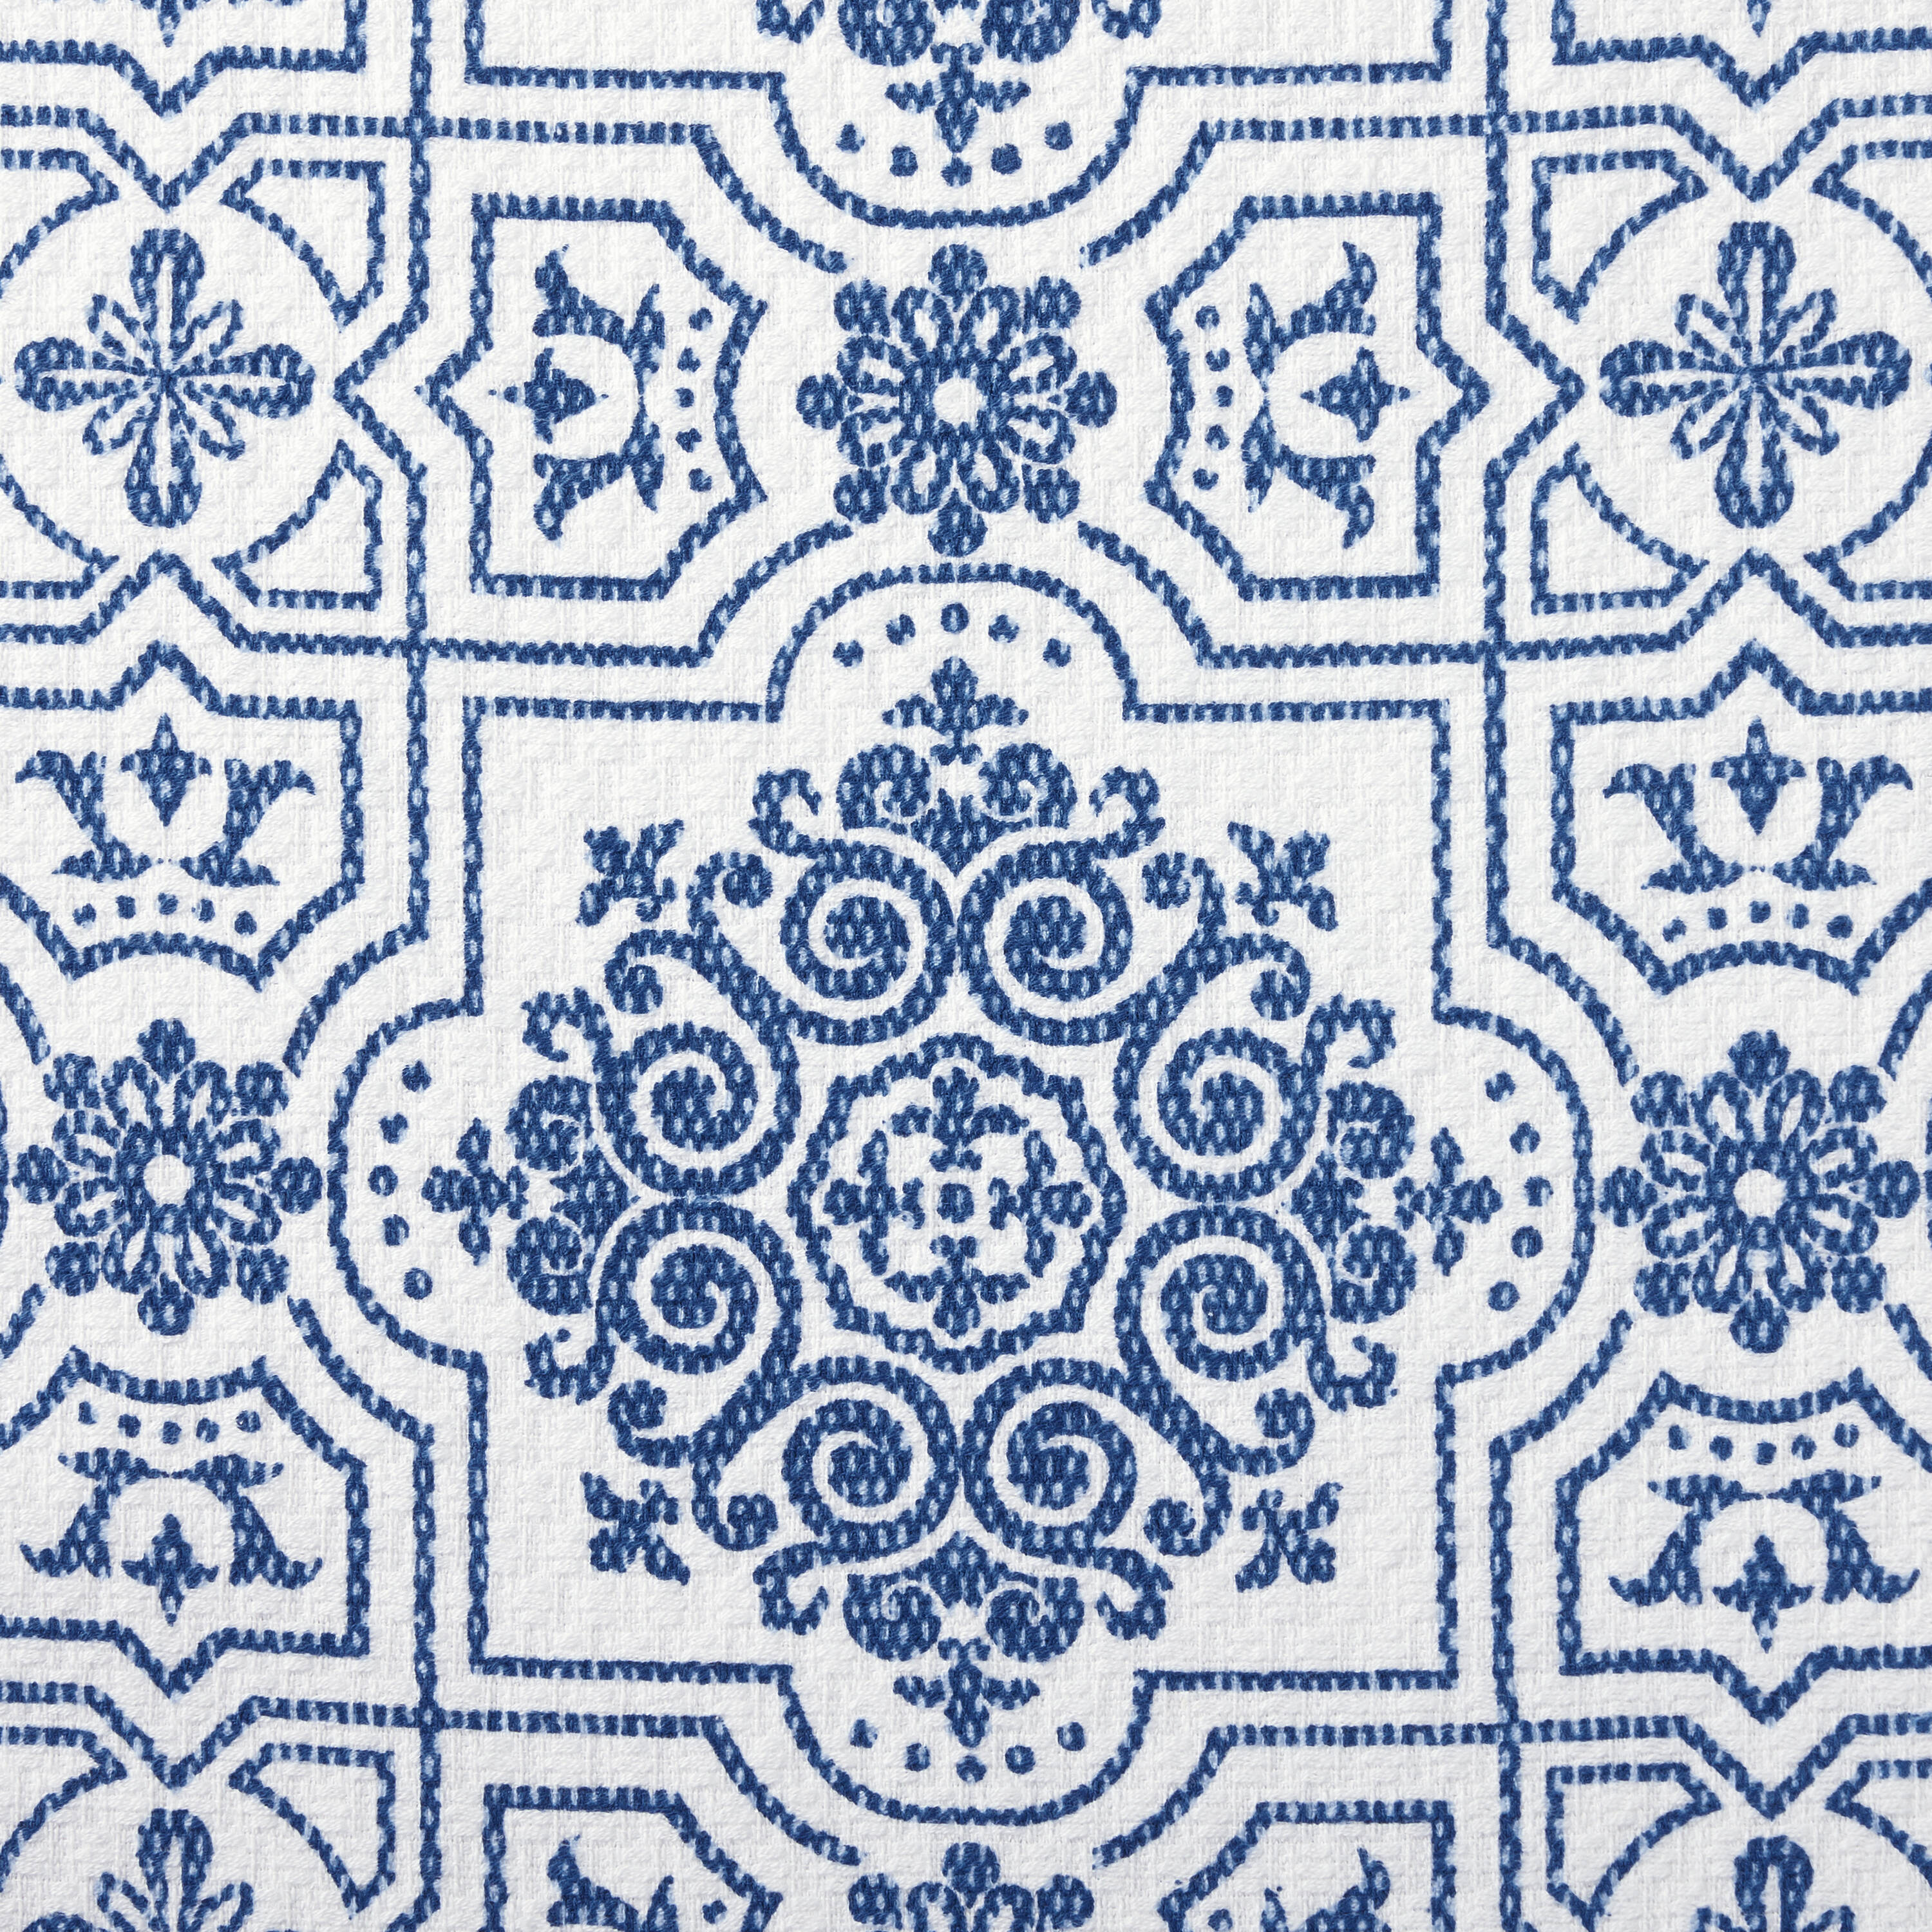 MARTHA STEWART FLORAL VINE KITCHEN TOWELS - SET OF 2 NAVY BLUE/BEIGE/WHITE